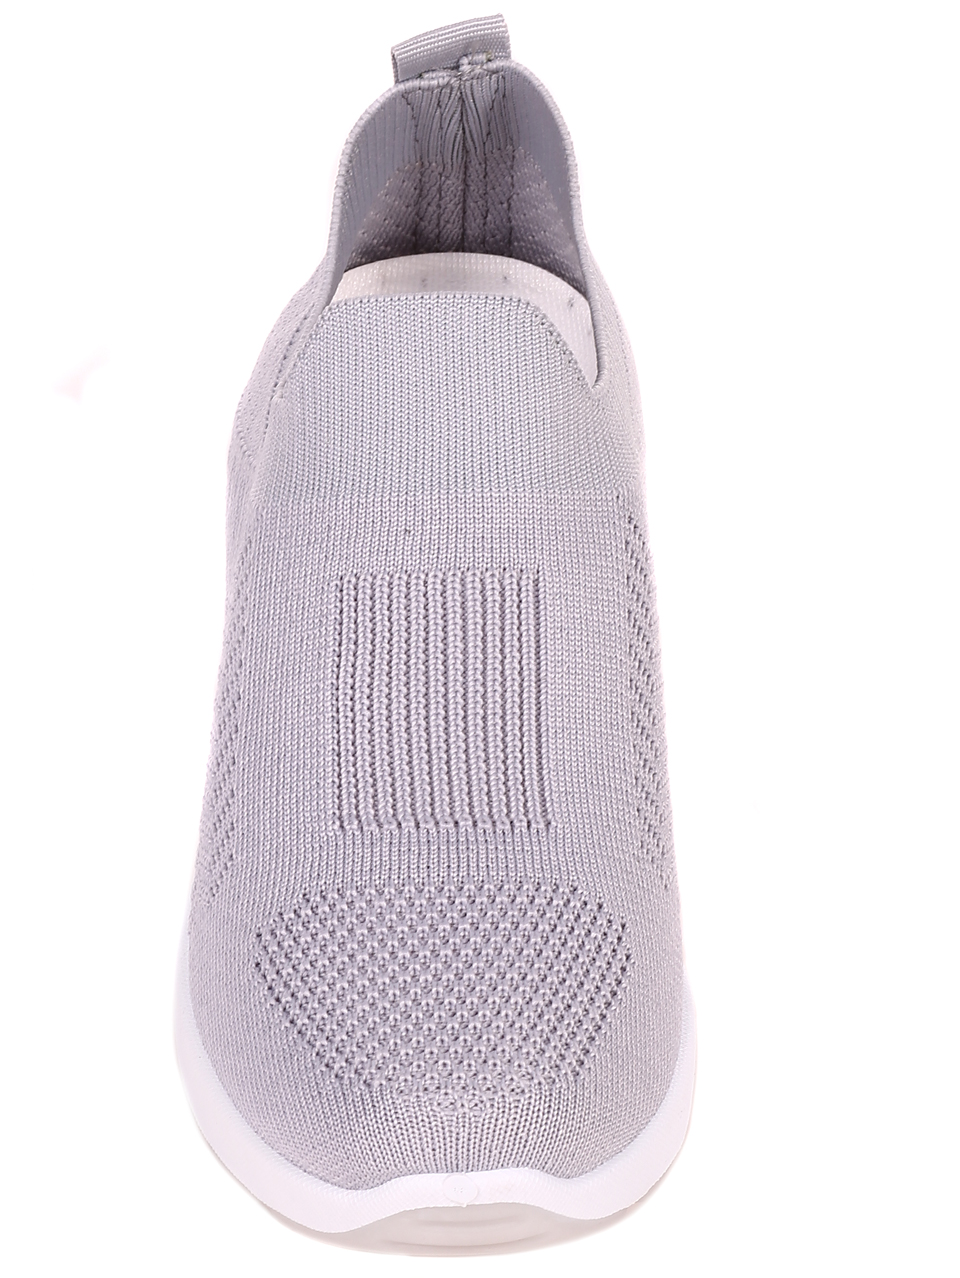 Ежедневни дамски обувки в сиво 3U-22044 grey